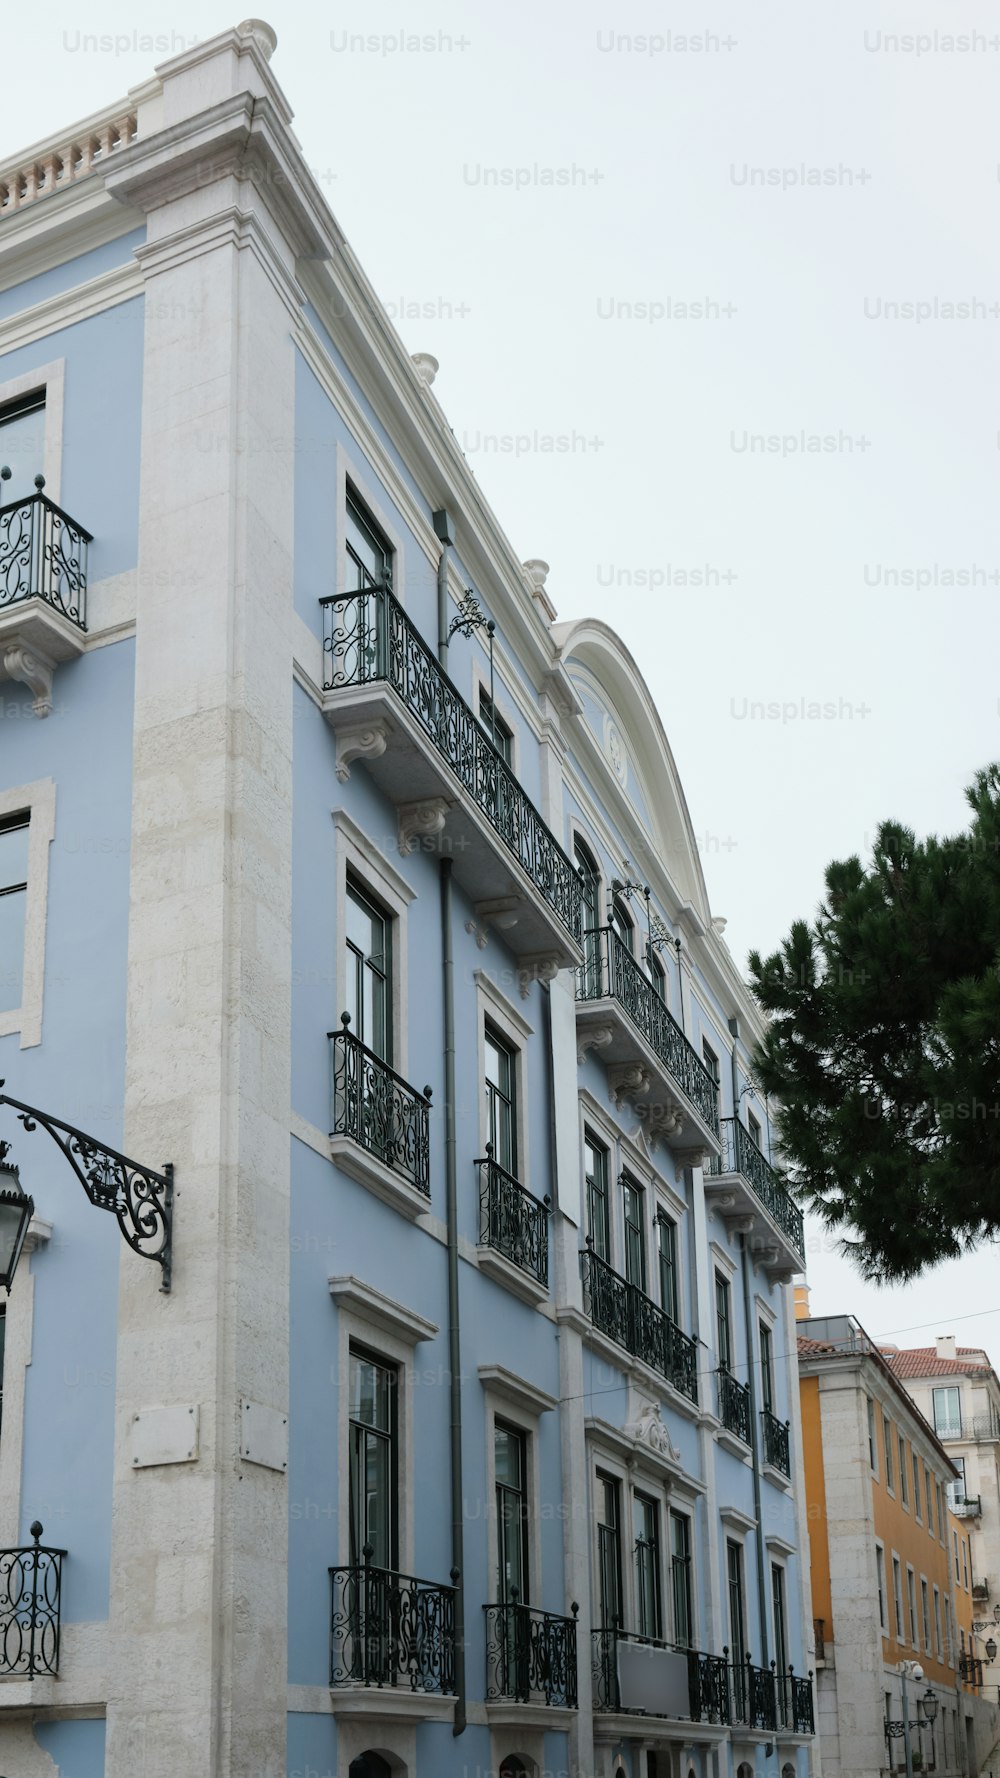 ein blau-weißes Gebäude mit Balkonen und schmiedeeisernen Balkonen